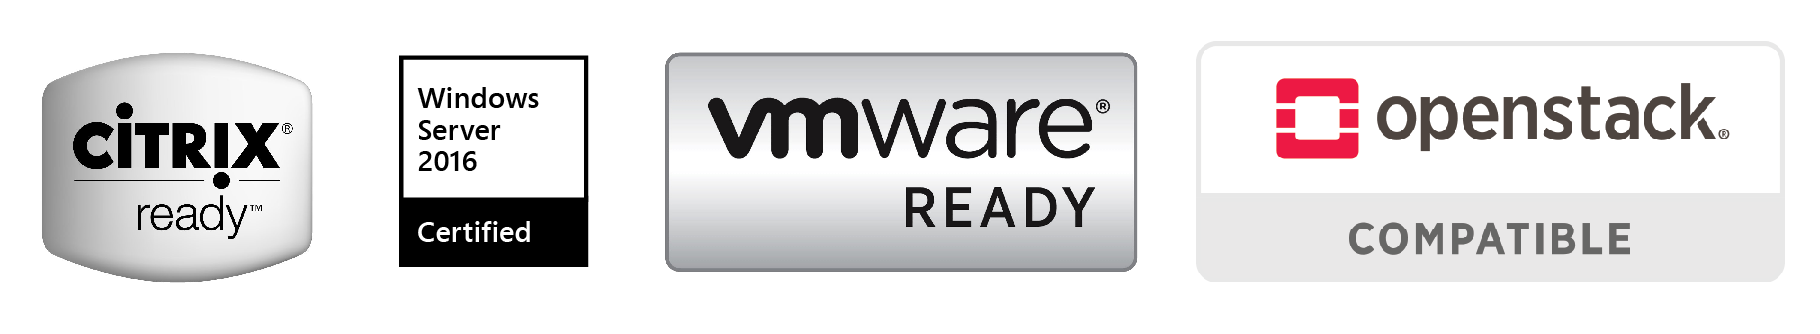 NAS úložisko Synology DS1621+ plne podporuje väčšinu virtualizačných riešení, ako je napríklad VMware vSphere 6 či OpenStack Cinder.